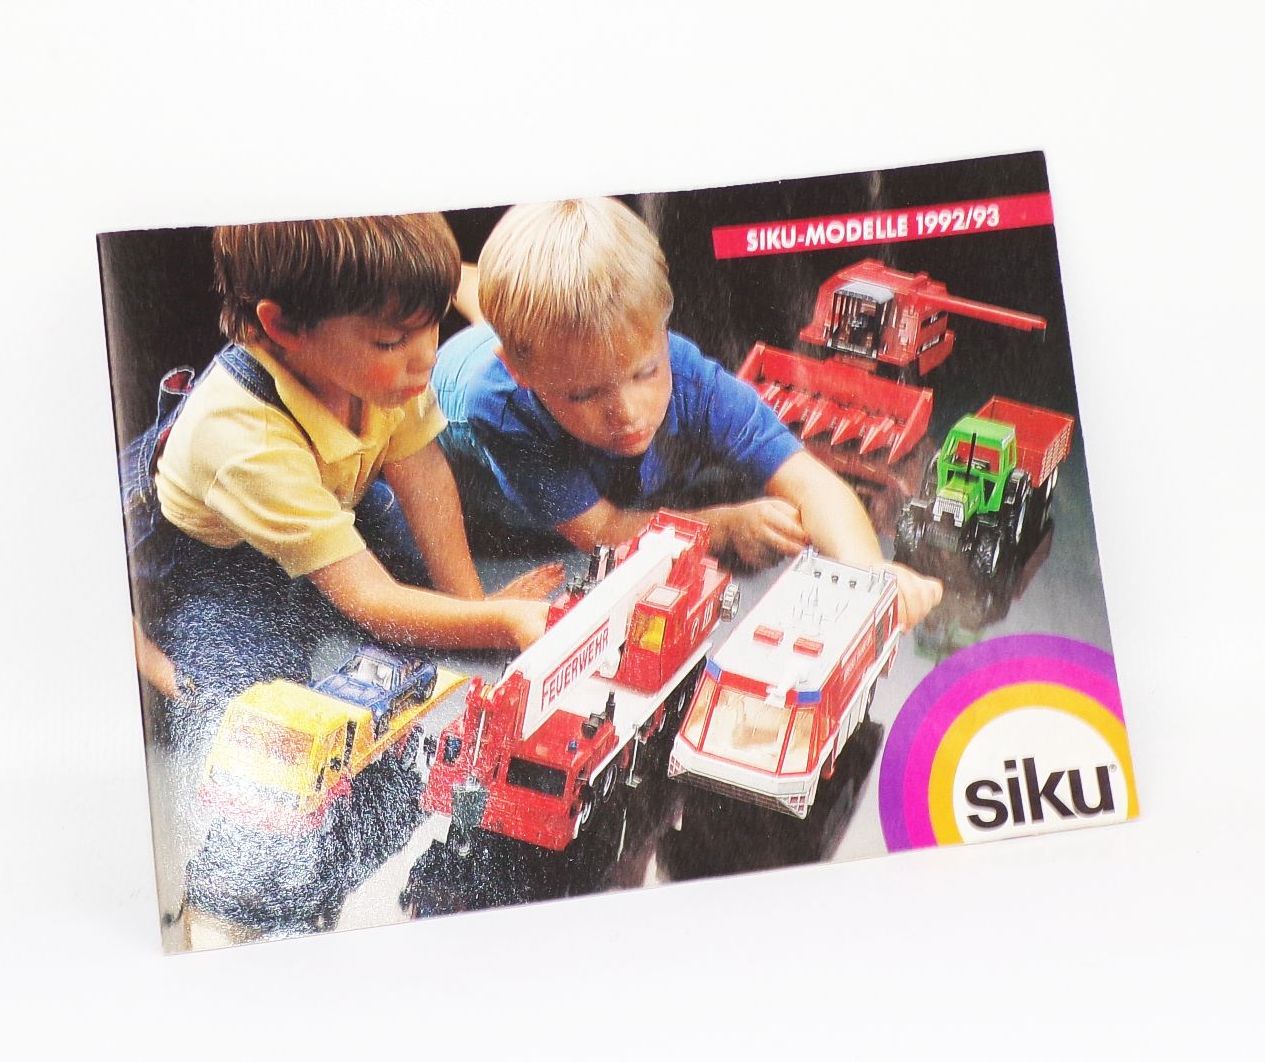 Siku Modelle 1992 1993 vintage Katalog